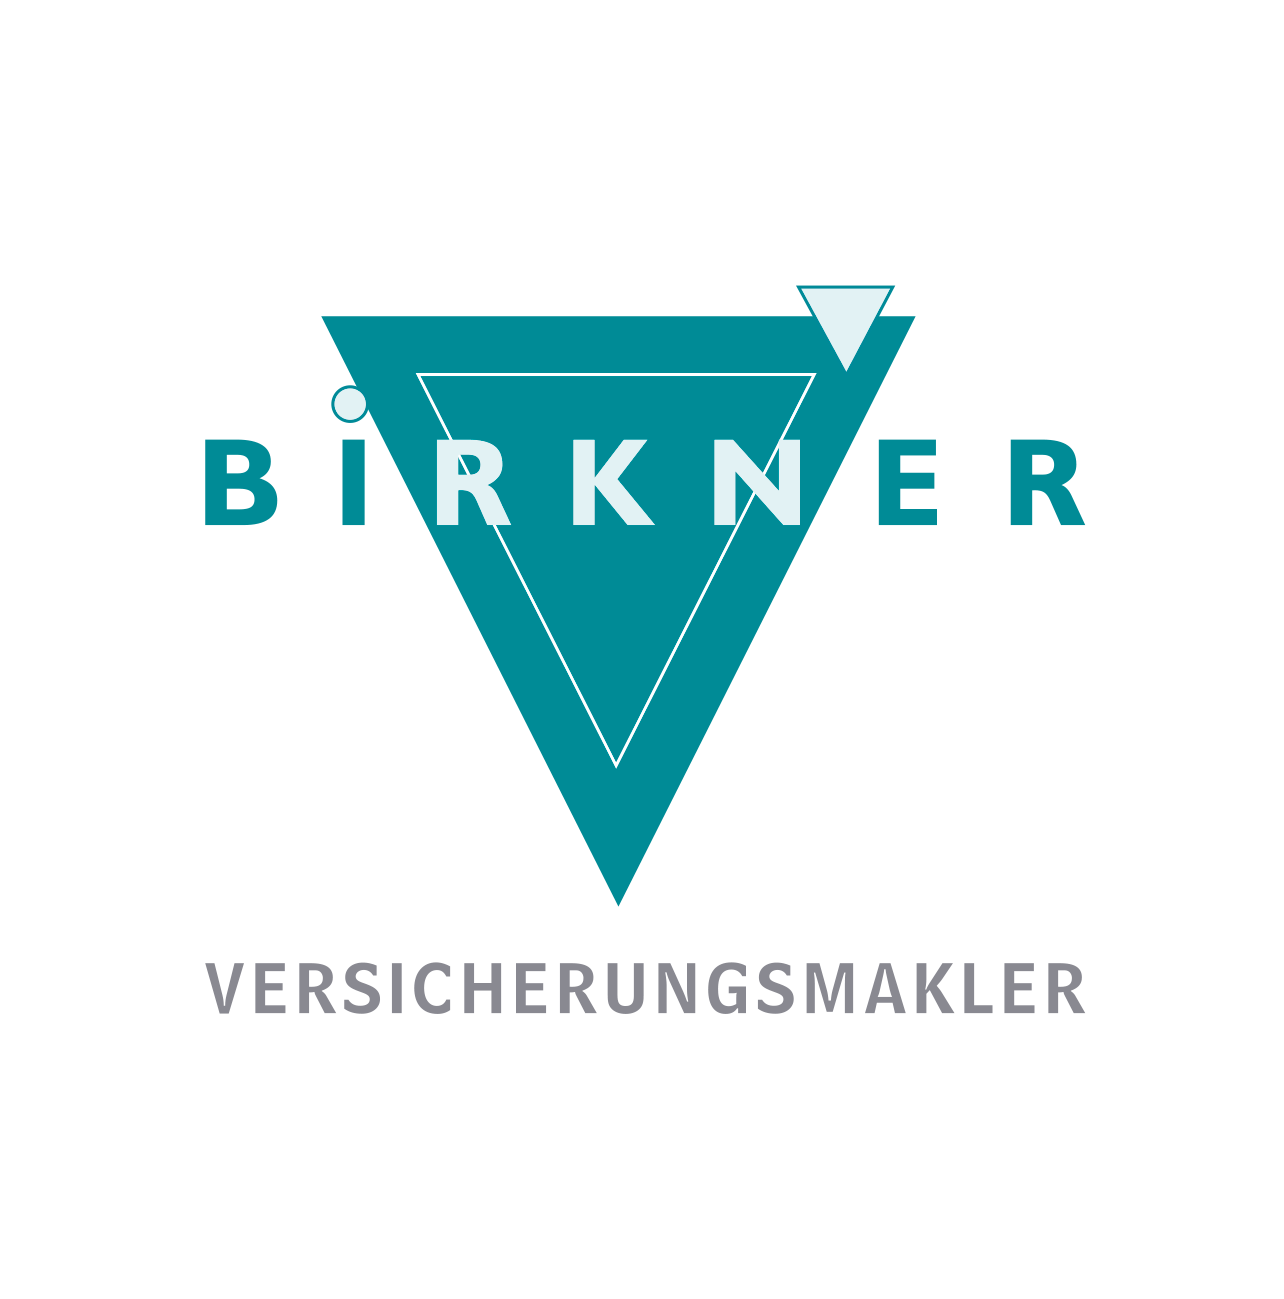 Birkner Versicherungsmakler – ein neuer Partner an unserer Seite